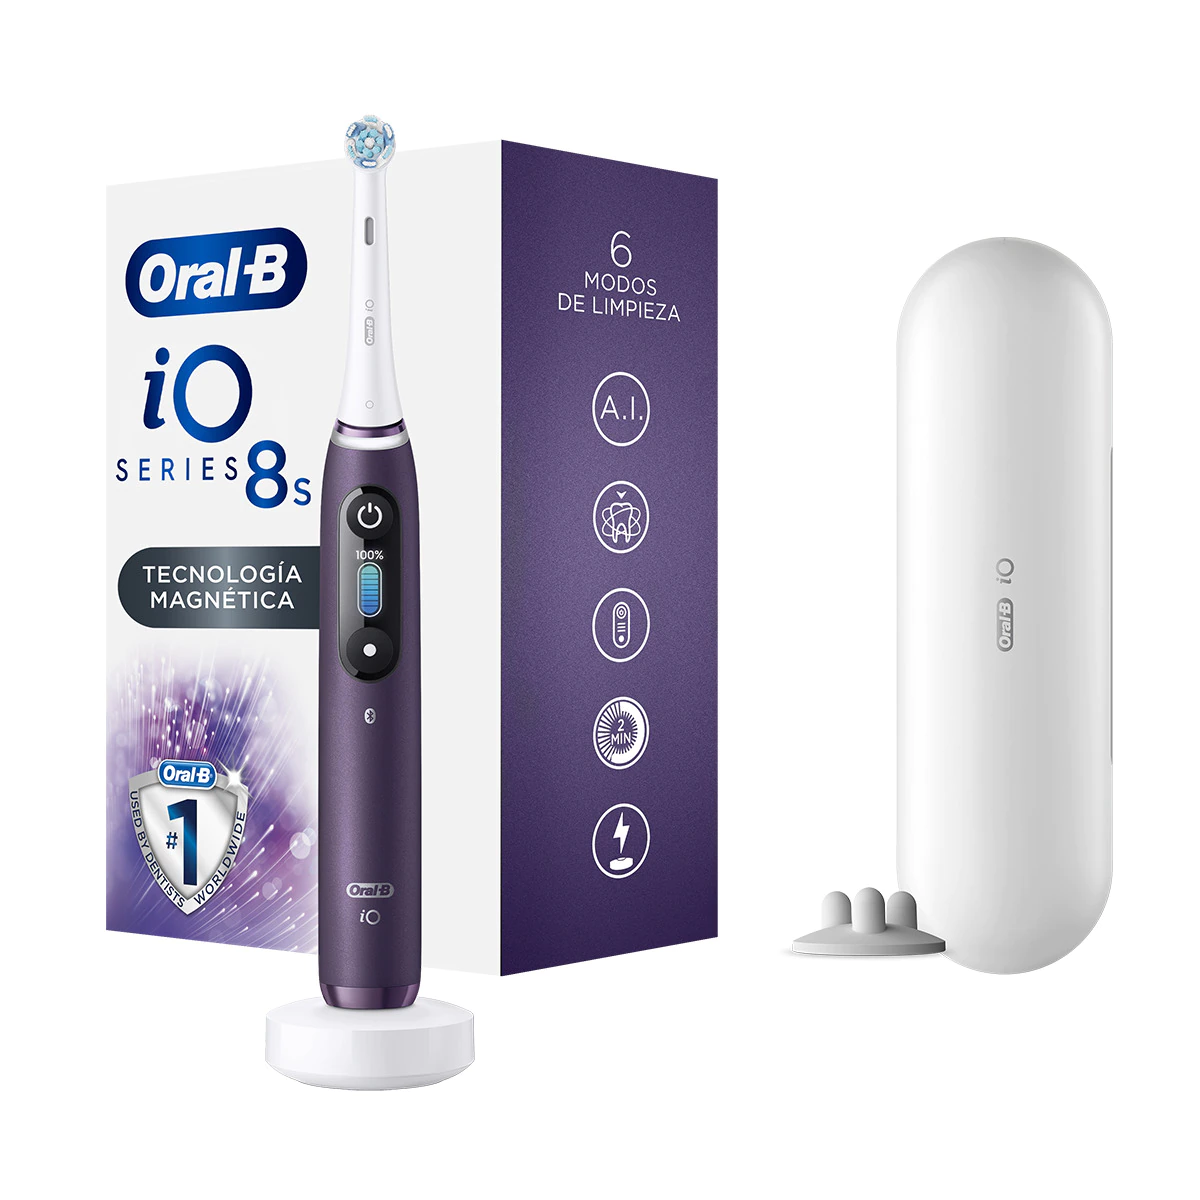 Cepillo de dientes eléctrico Braun Oral-B iO 8s 6 modos de limpieza